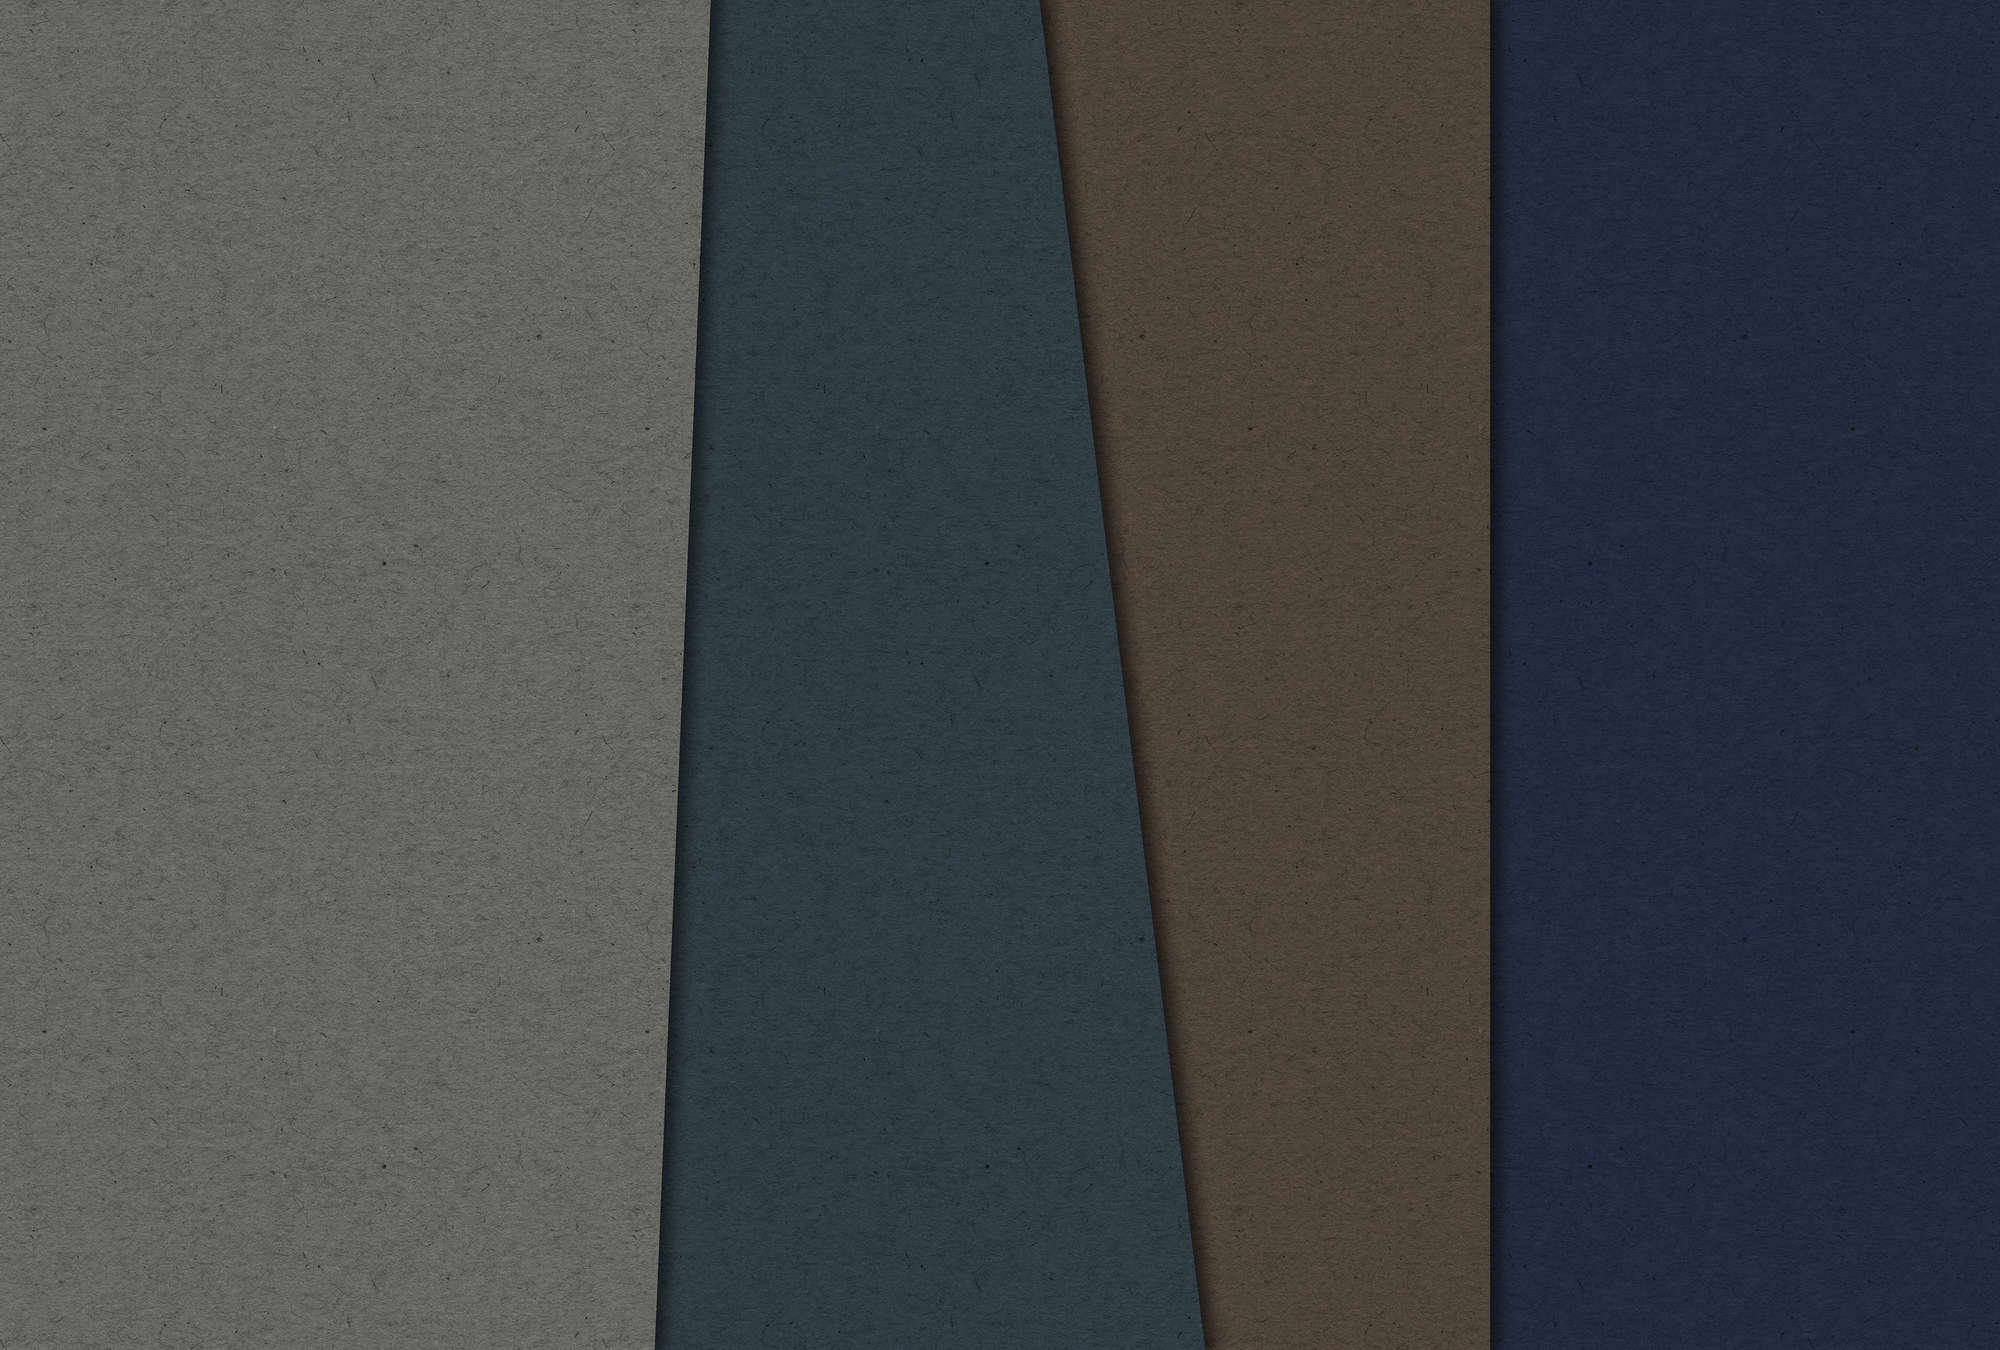             Layered Cardboard 2 - Carta da parati fotografica in struttura di cartone con campi di colore scuro - Blu, Marrone | Perla in pile liscio
        